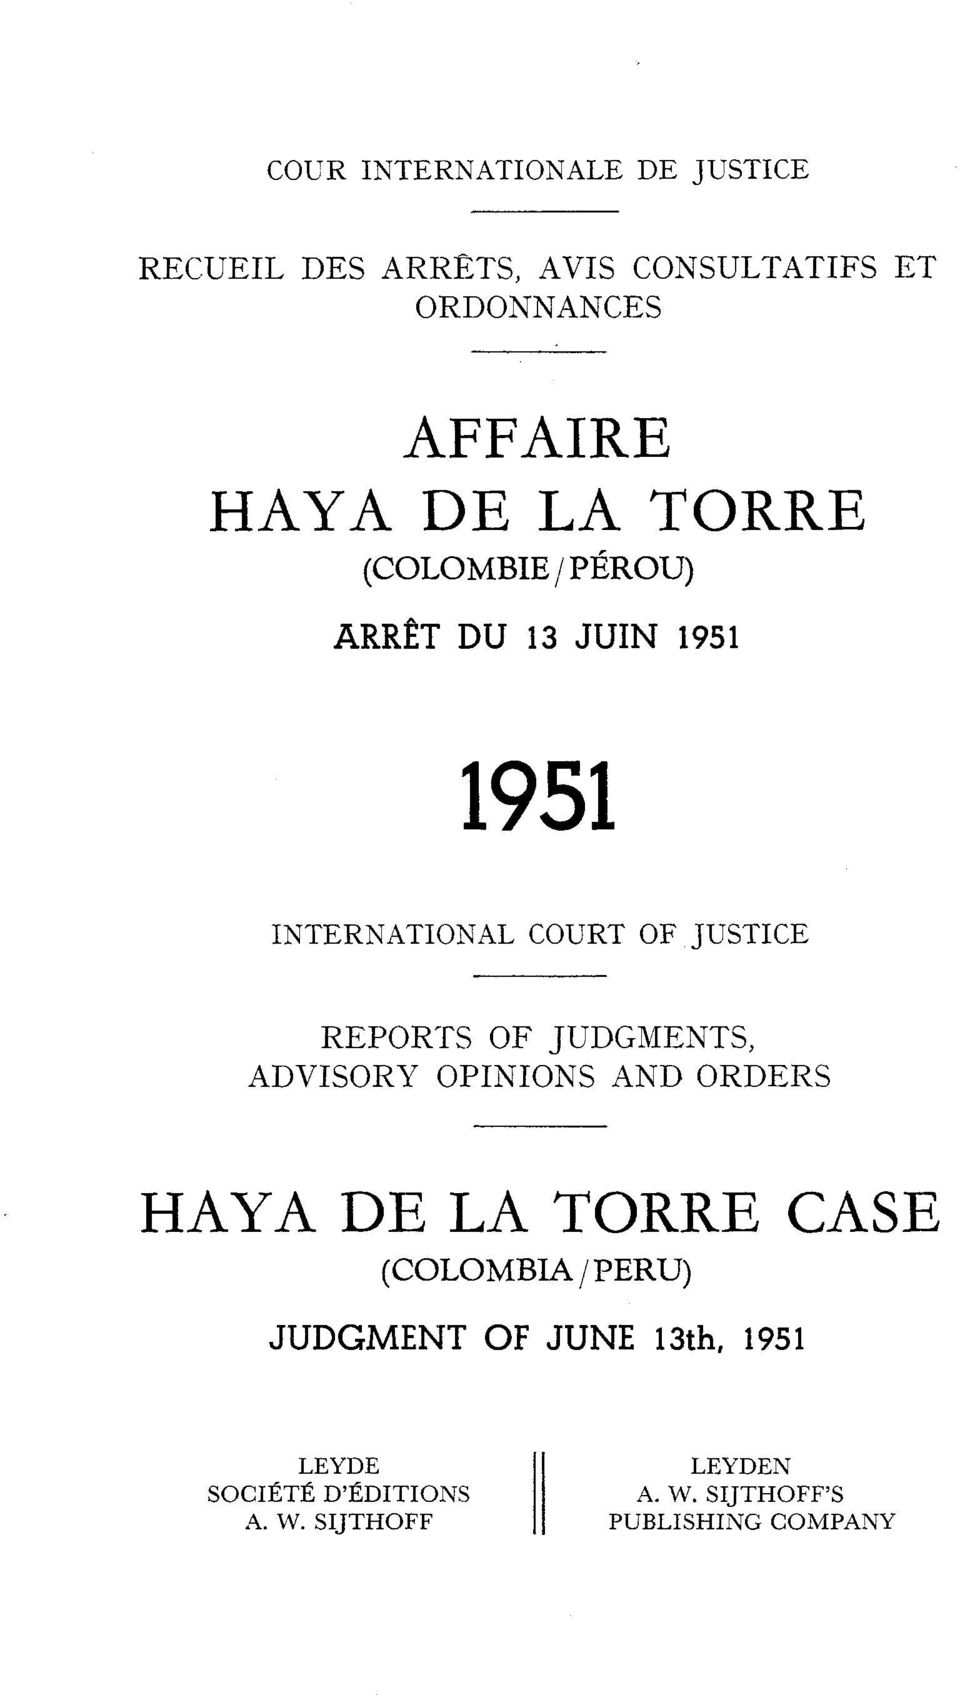 JUDGMENTS, ADVISOR17 OPINIONS AND ORDERS HAYA DE LA TORRE CASE (COLOMBLA / PERU) JUDGMENT OF